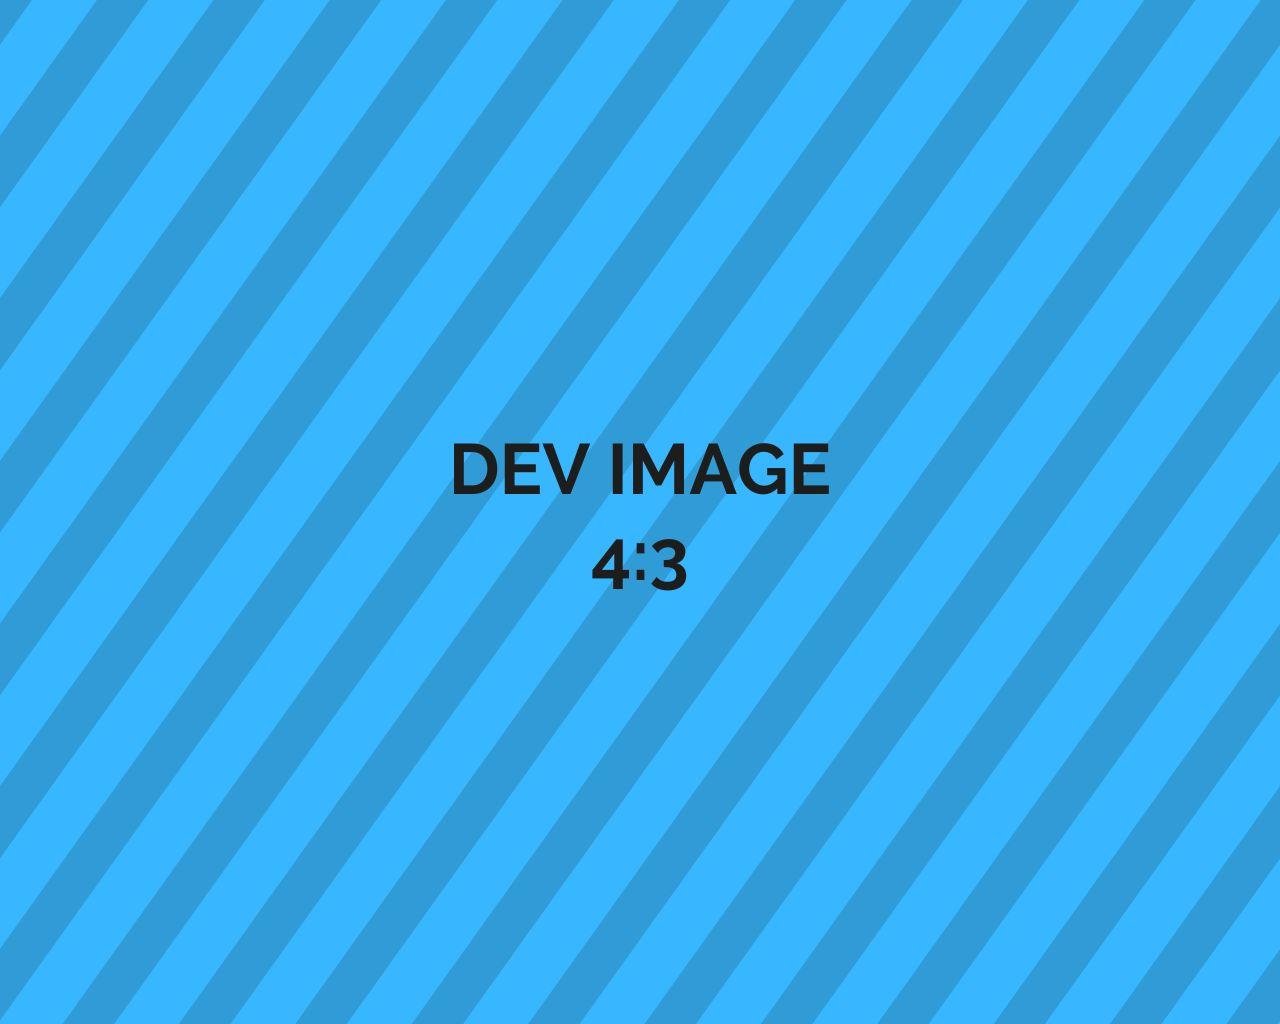 Dev-image-blue-4_3